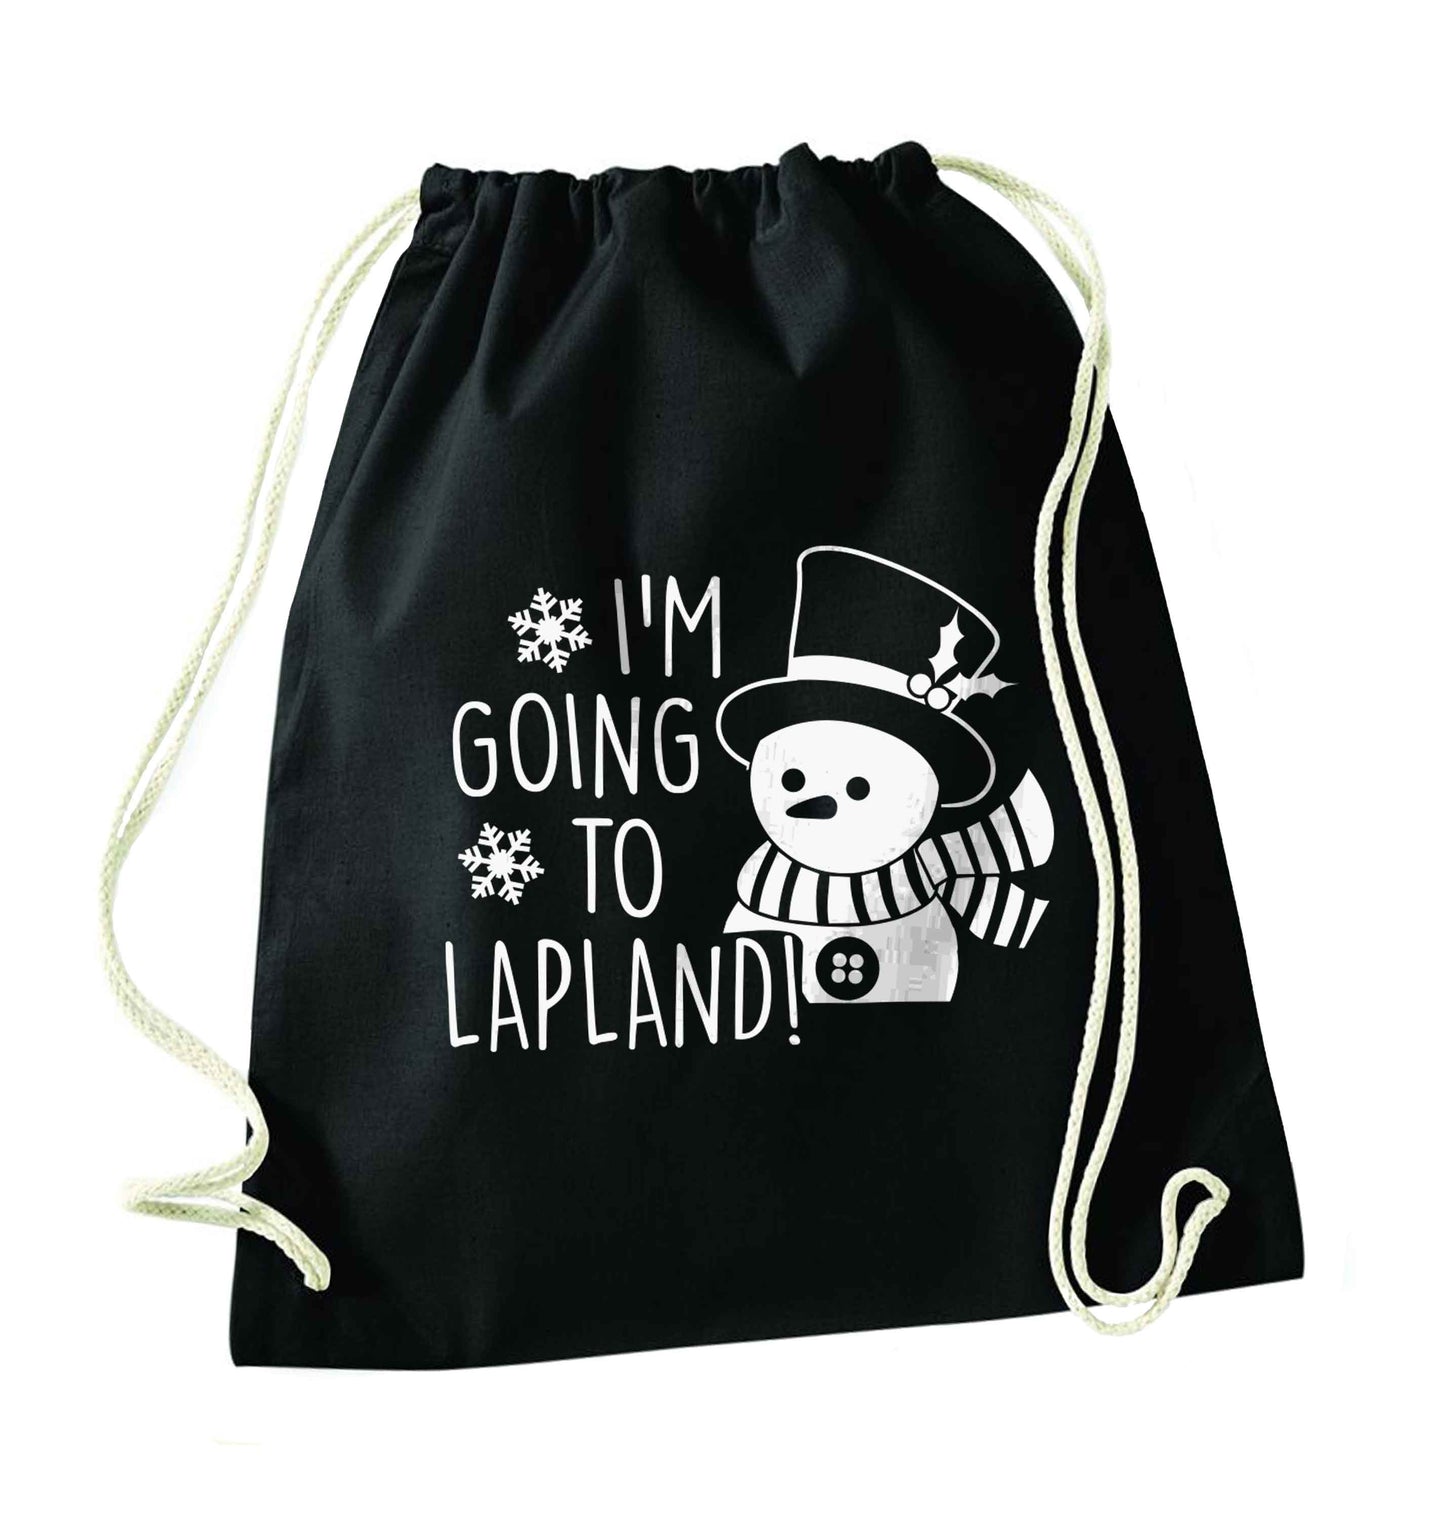 I'm going to Lapland black drawstring bag